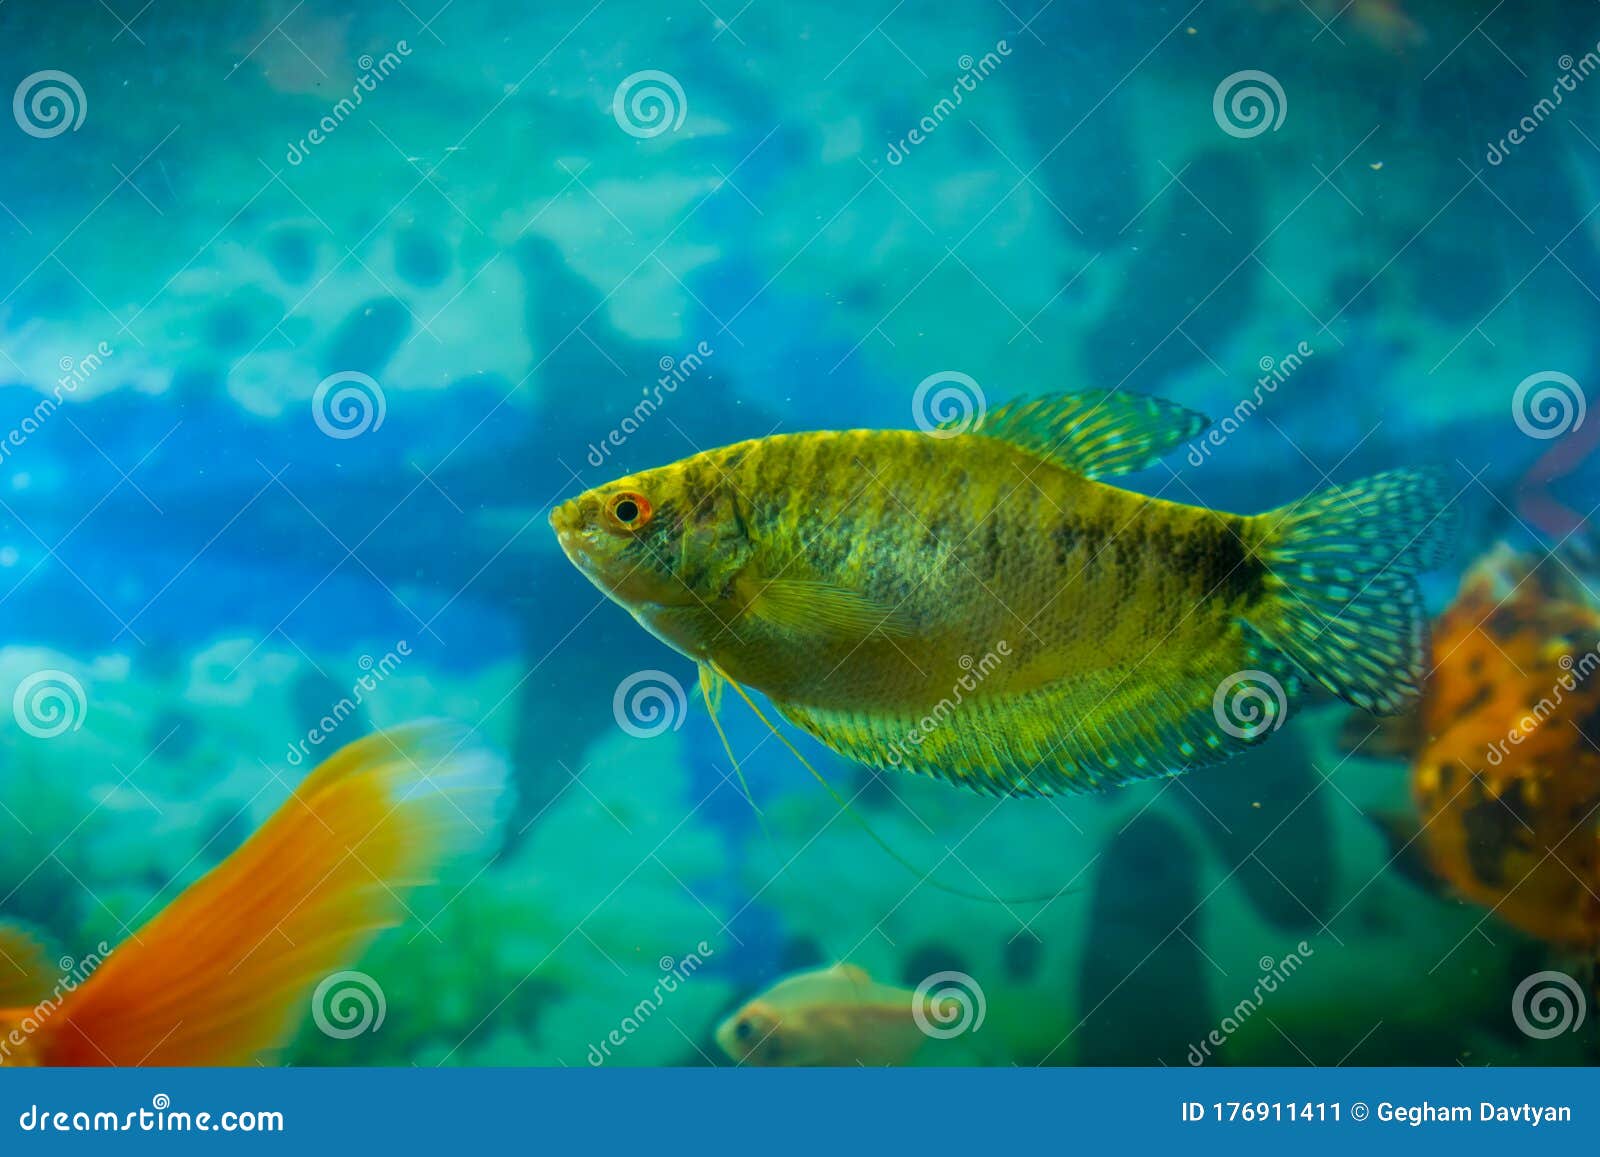 ozon Snel Stimulans Gekleurde Tropische Vis in Een Aquarium Stock Afbeelding - Image of kleur,  vissen: 176911411